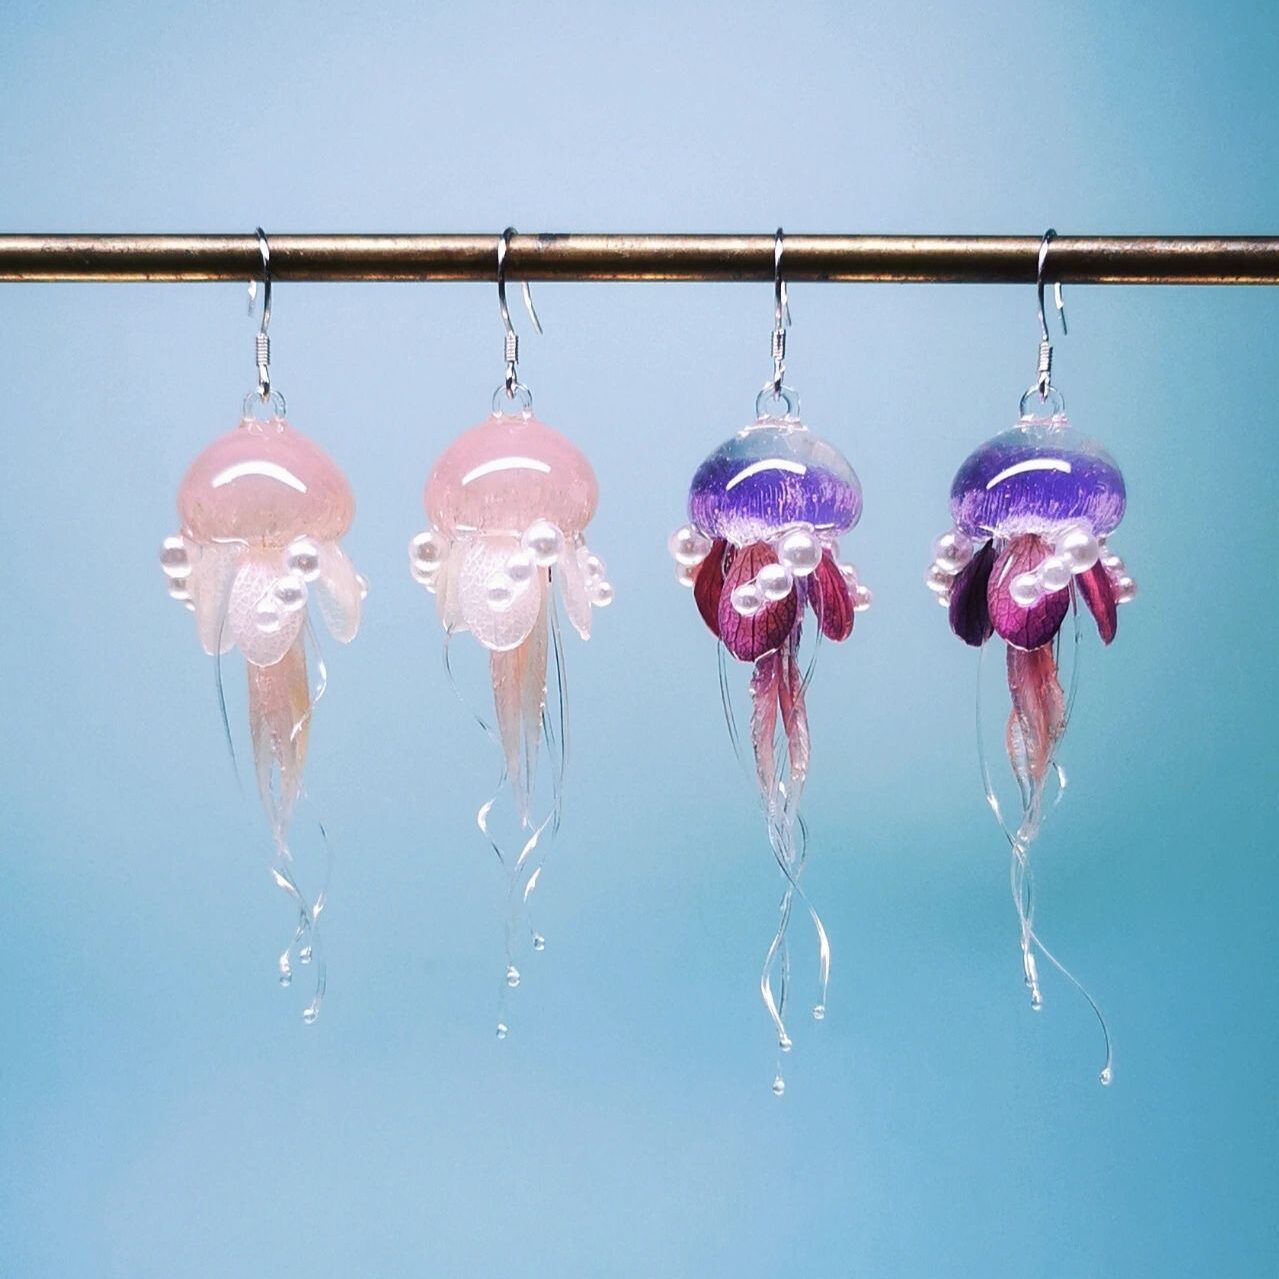 Moon jellyfish, Aurelia aurita, by Julie Hatcher - YouTube